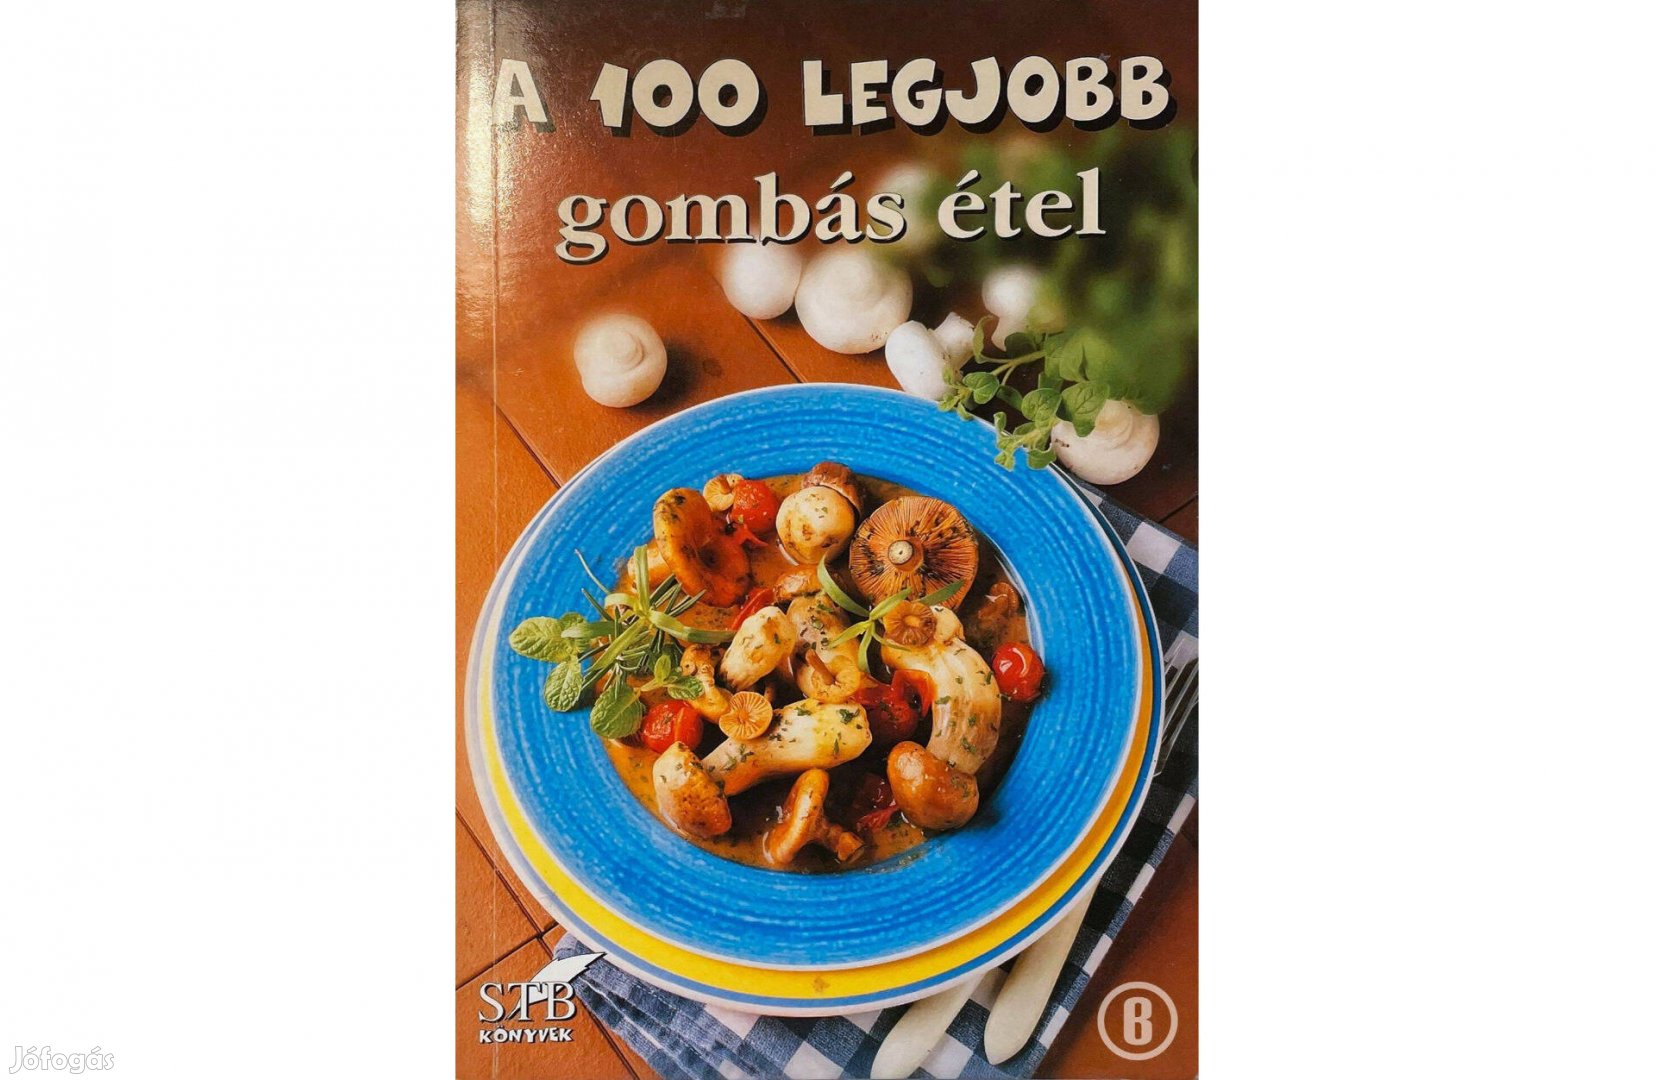 A 100 legjobb gombás étel (27. kötet / szerk. Toró Elza)